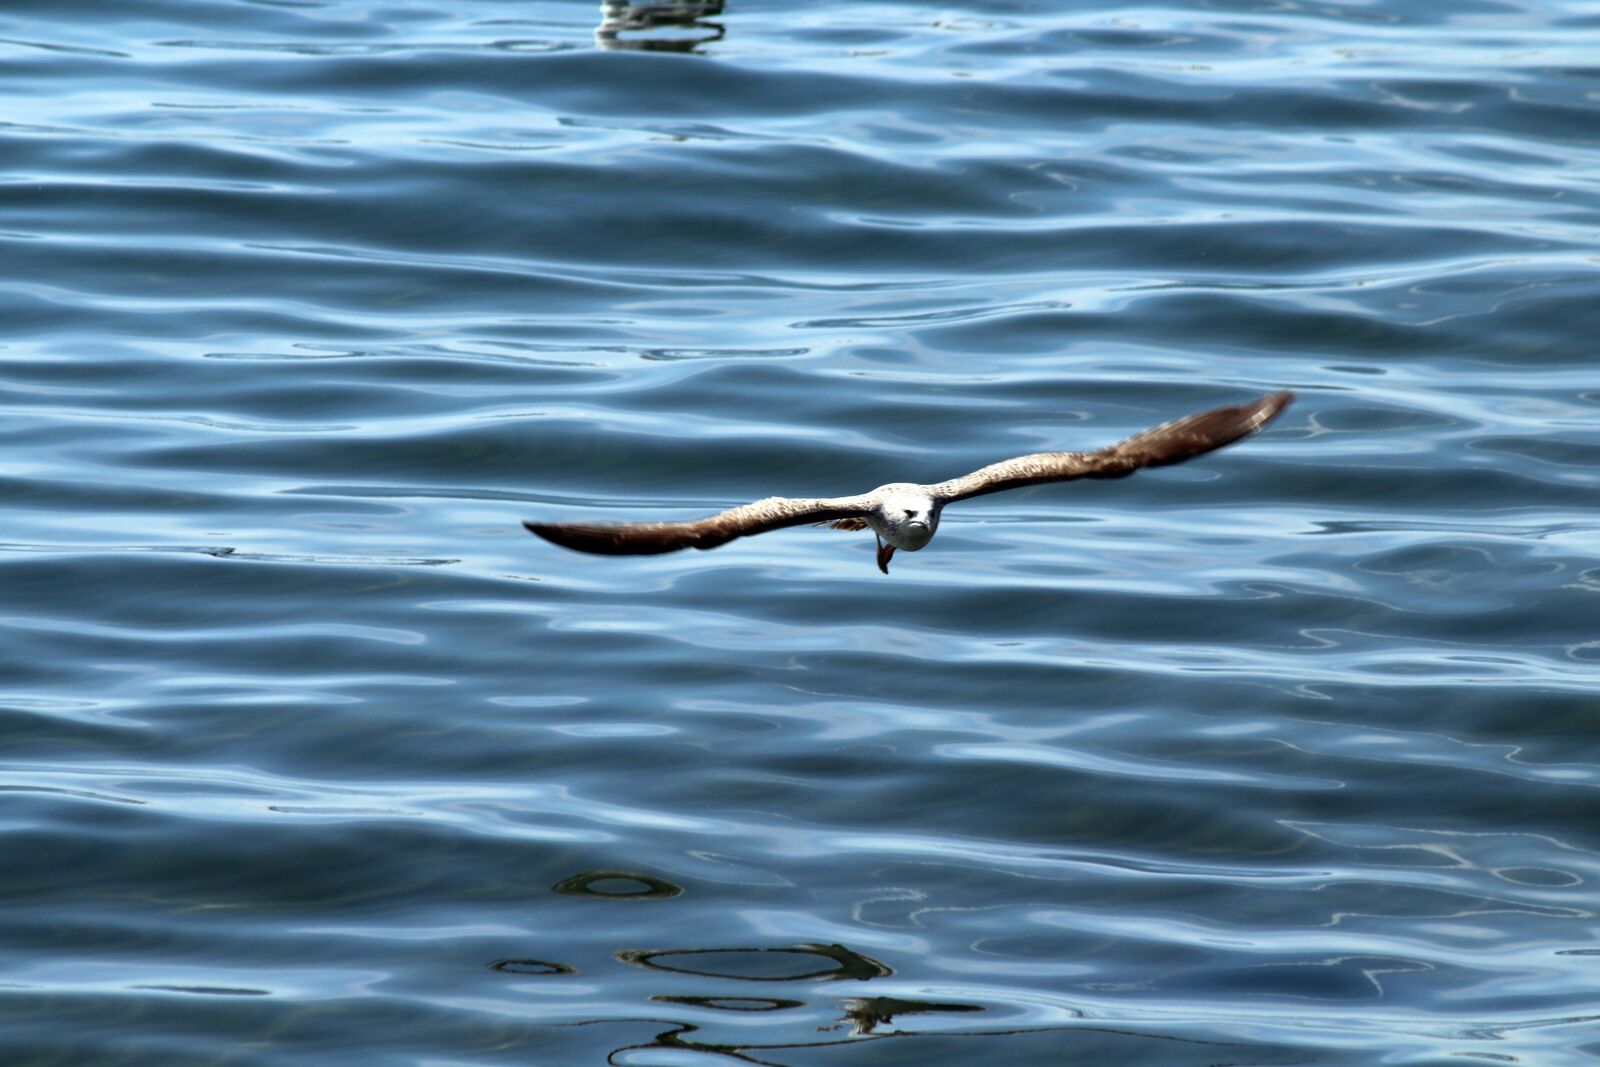 Canon EOS 1300D (EOS Rebel T6 / EOS Kiss X80) sample photo. Bird, sea, seagull photography